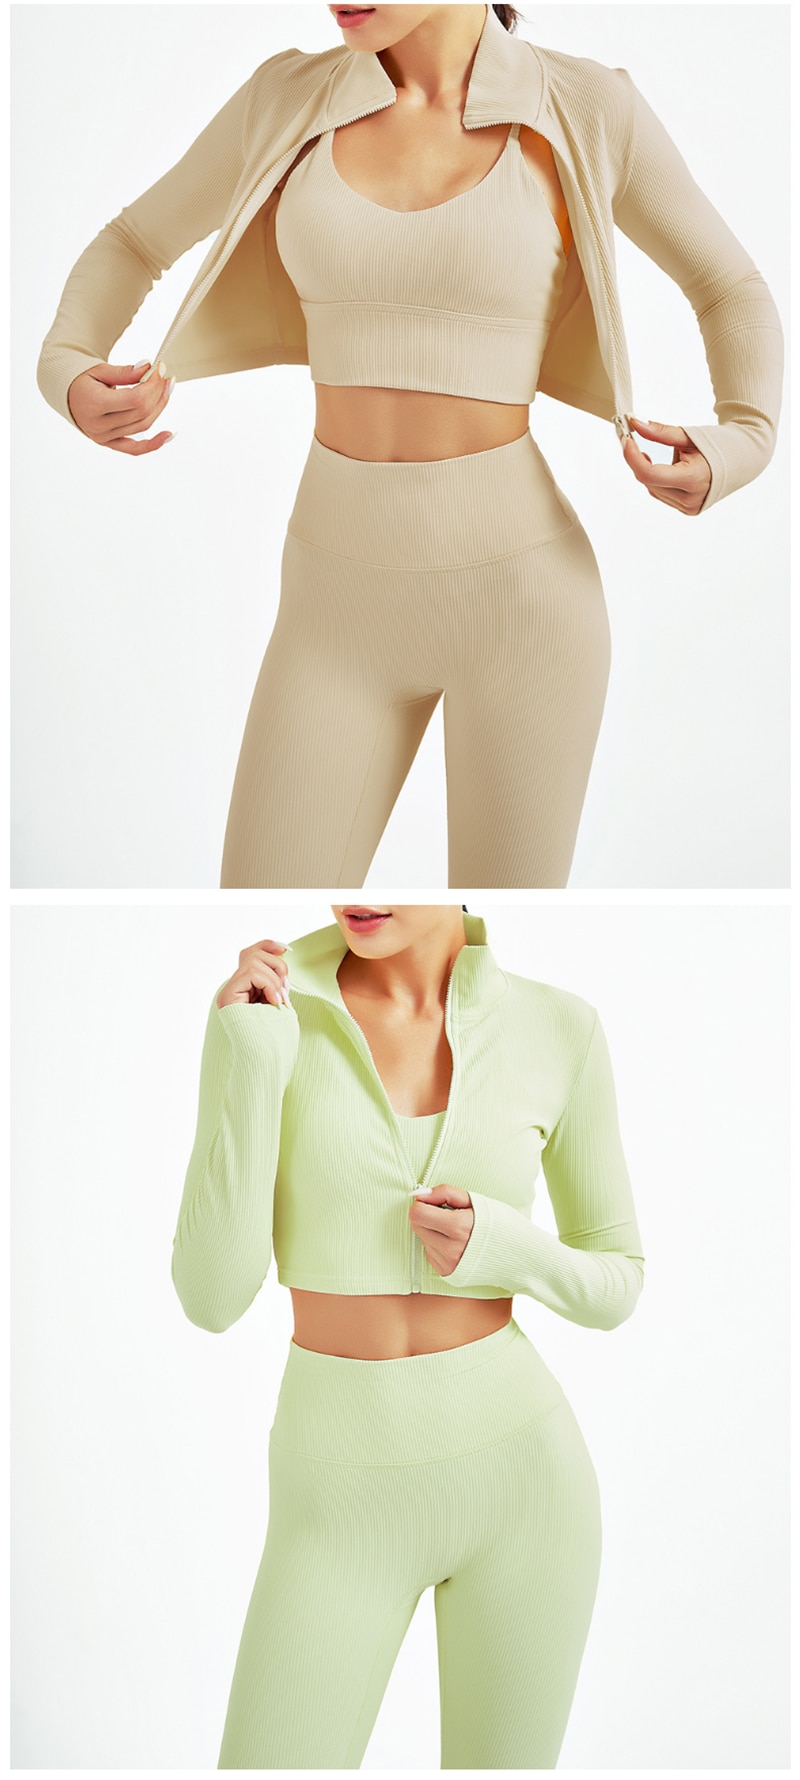 Zipper Long Sleeve Sports Jacket Women Zip Fitness Yoga Shirt Winter Warm Gym Top Activewear Running Coats Workout Clothes Woman